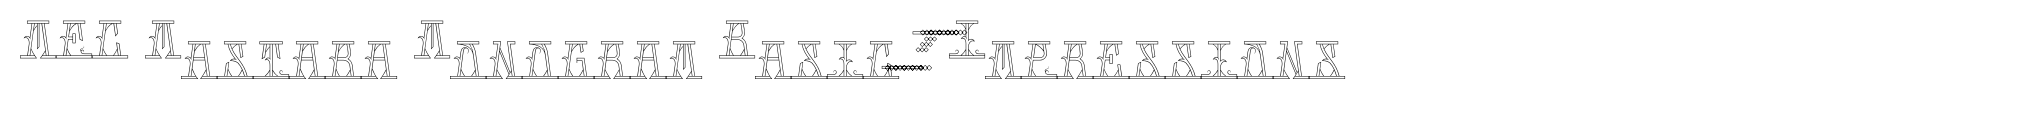 MFC Mastaba Monogram Basic 1000 Impressions image